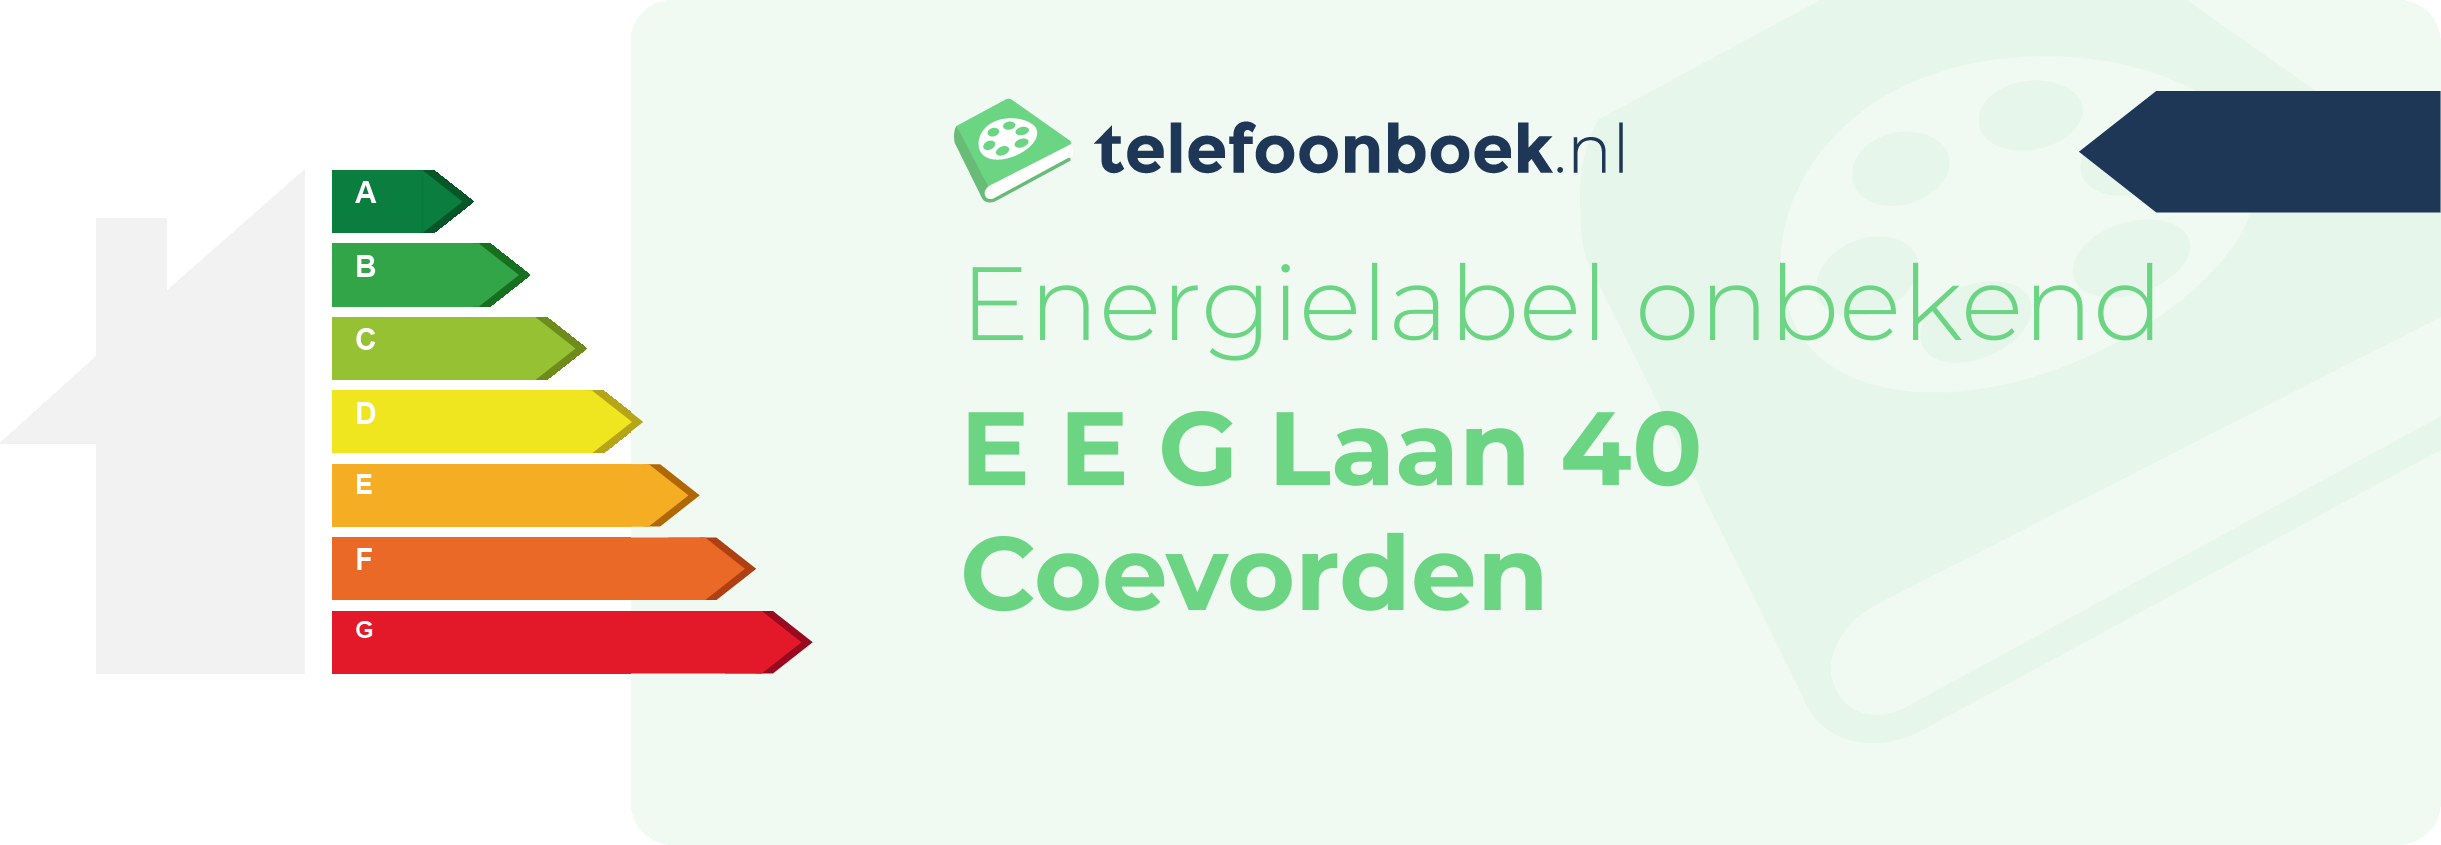 Energielabel E E G Laan 40 Coevorden